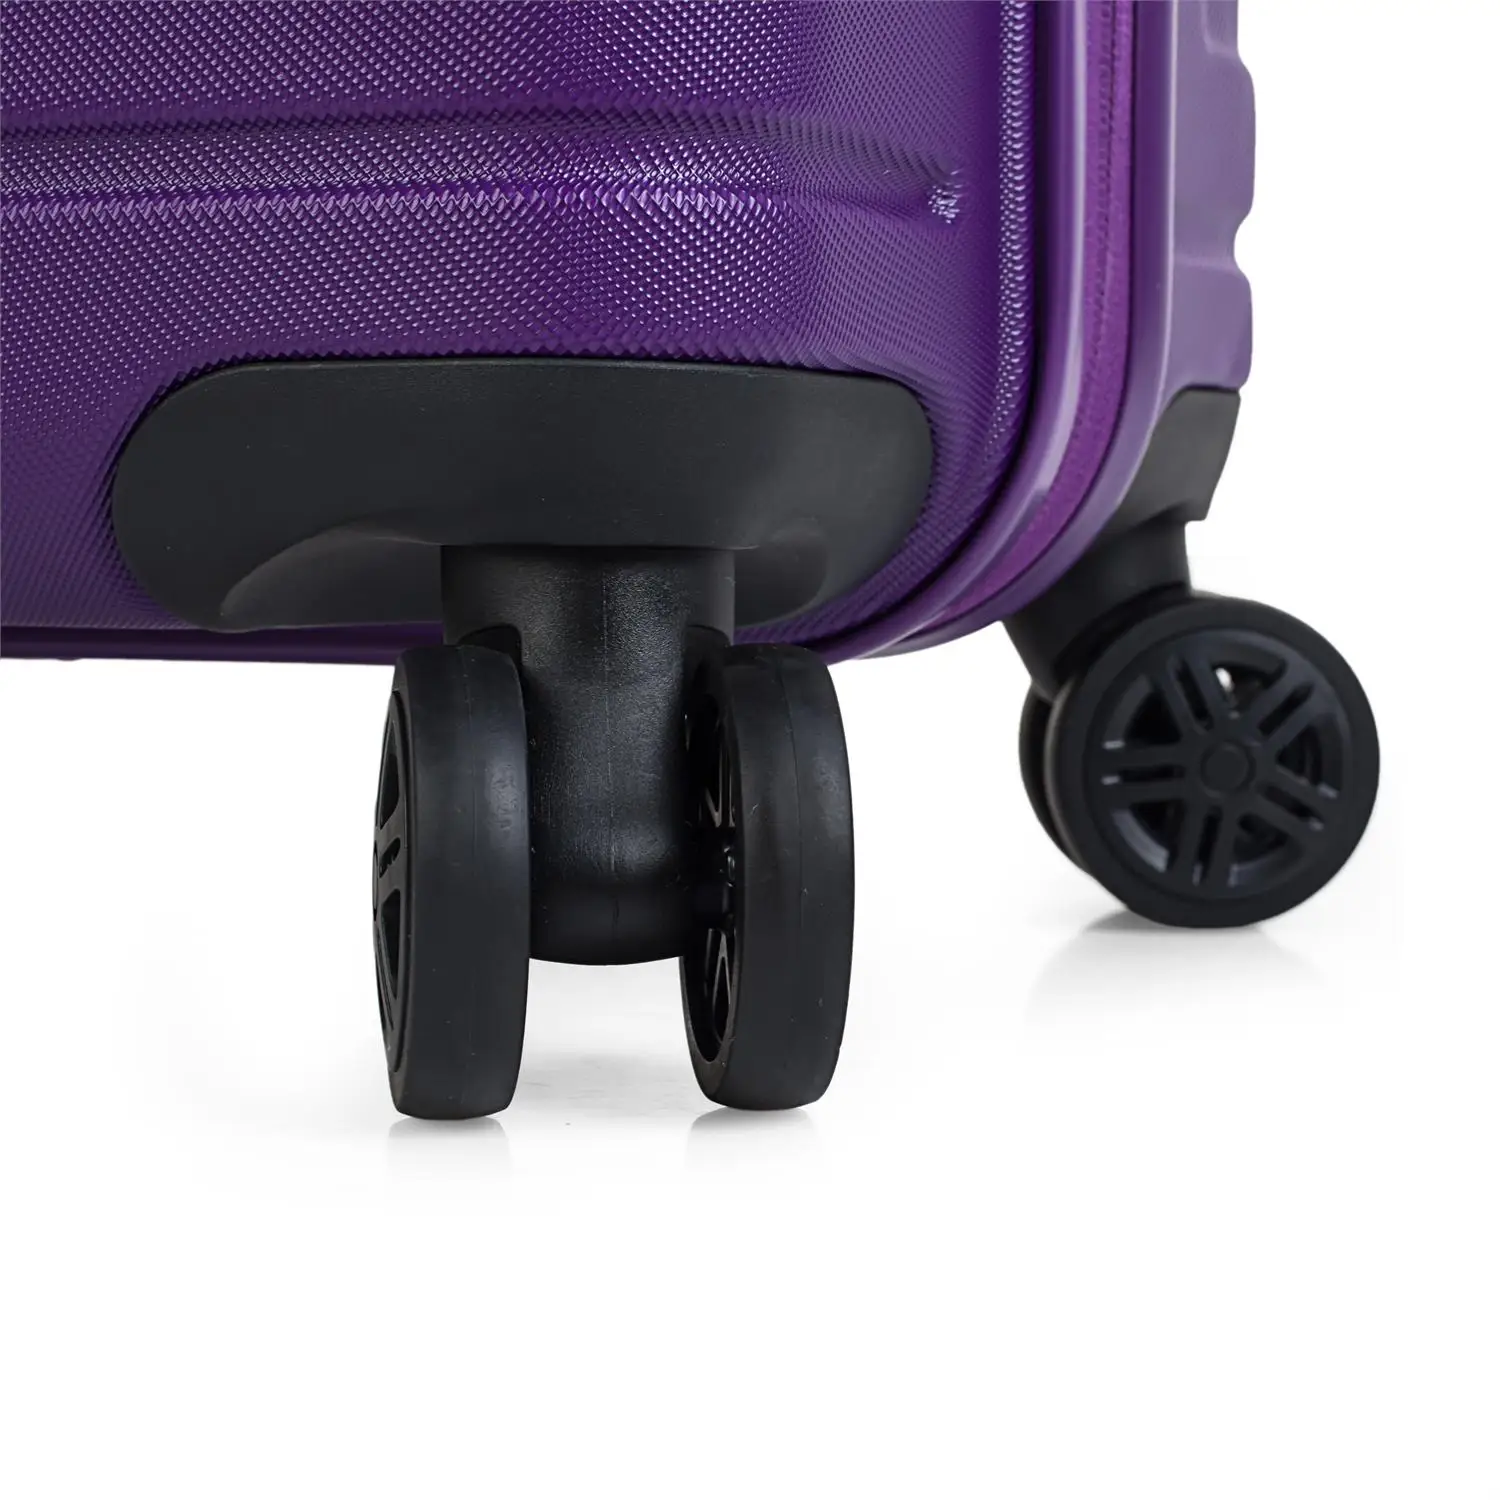 Juego набор 3 чемоданы тележки 55/66/76 см из АБС-пластика с рельефным рисунком. Жесткий, устойчивый и легкий. Ручка Telescó